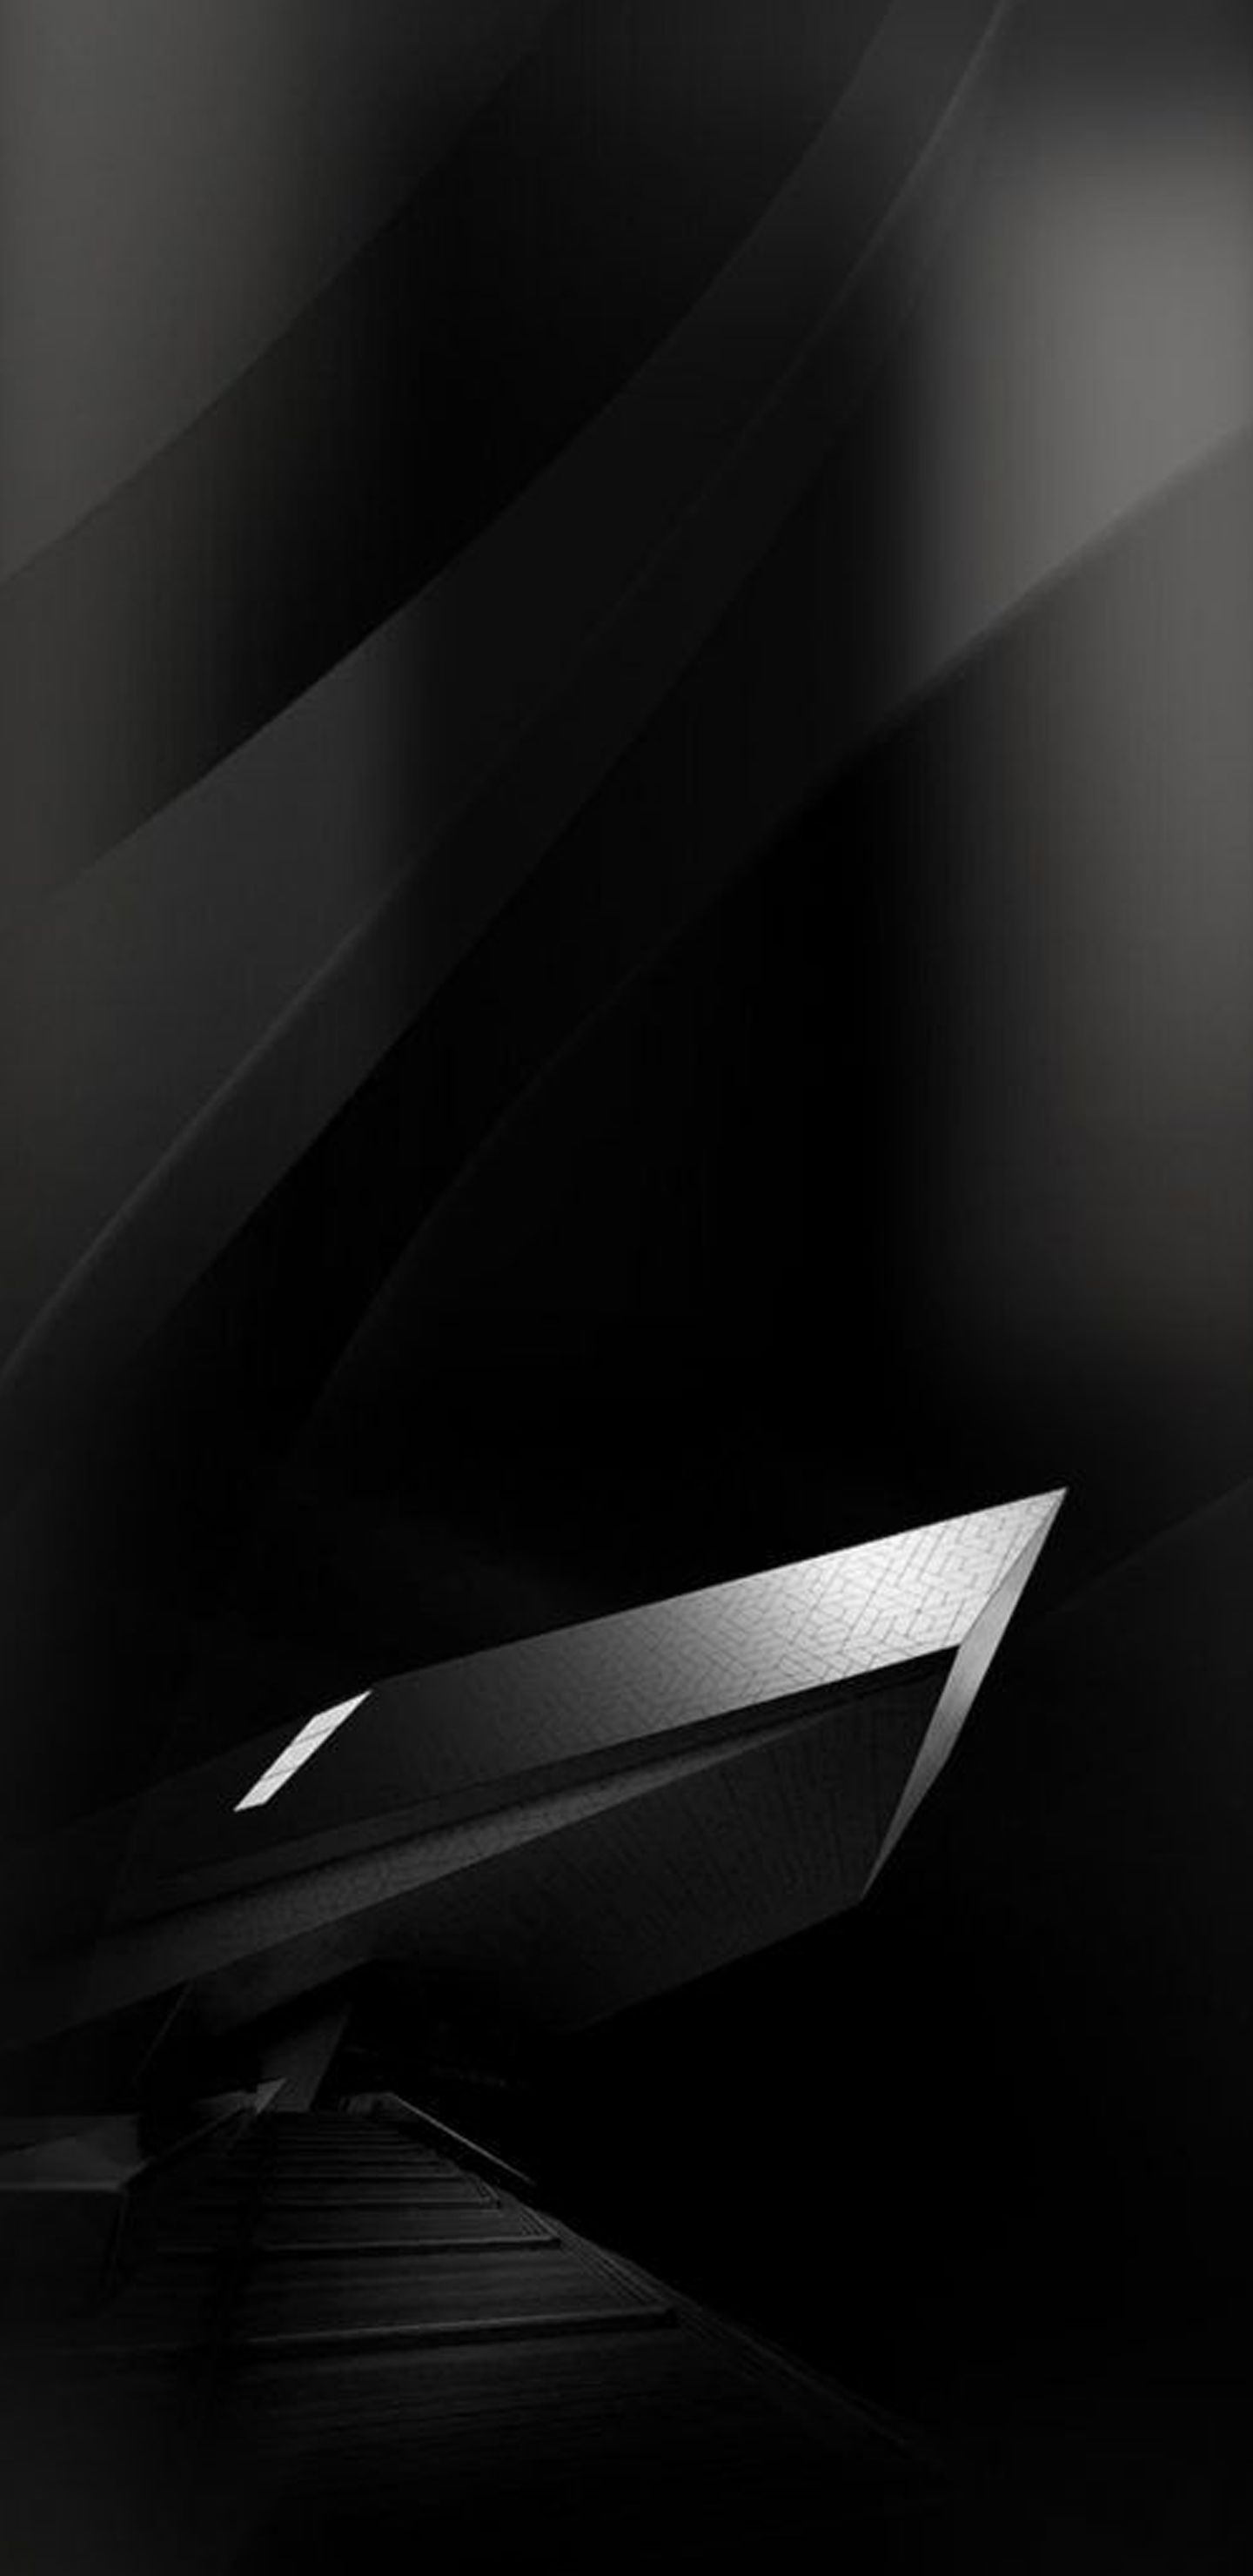 삼성 s8 벽지,검정,하얀,검정색과 흰색,차량 문,흑백 사진